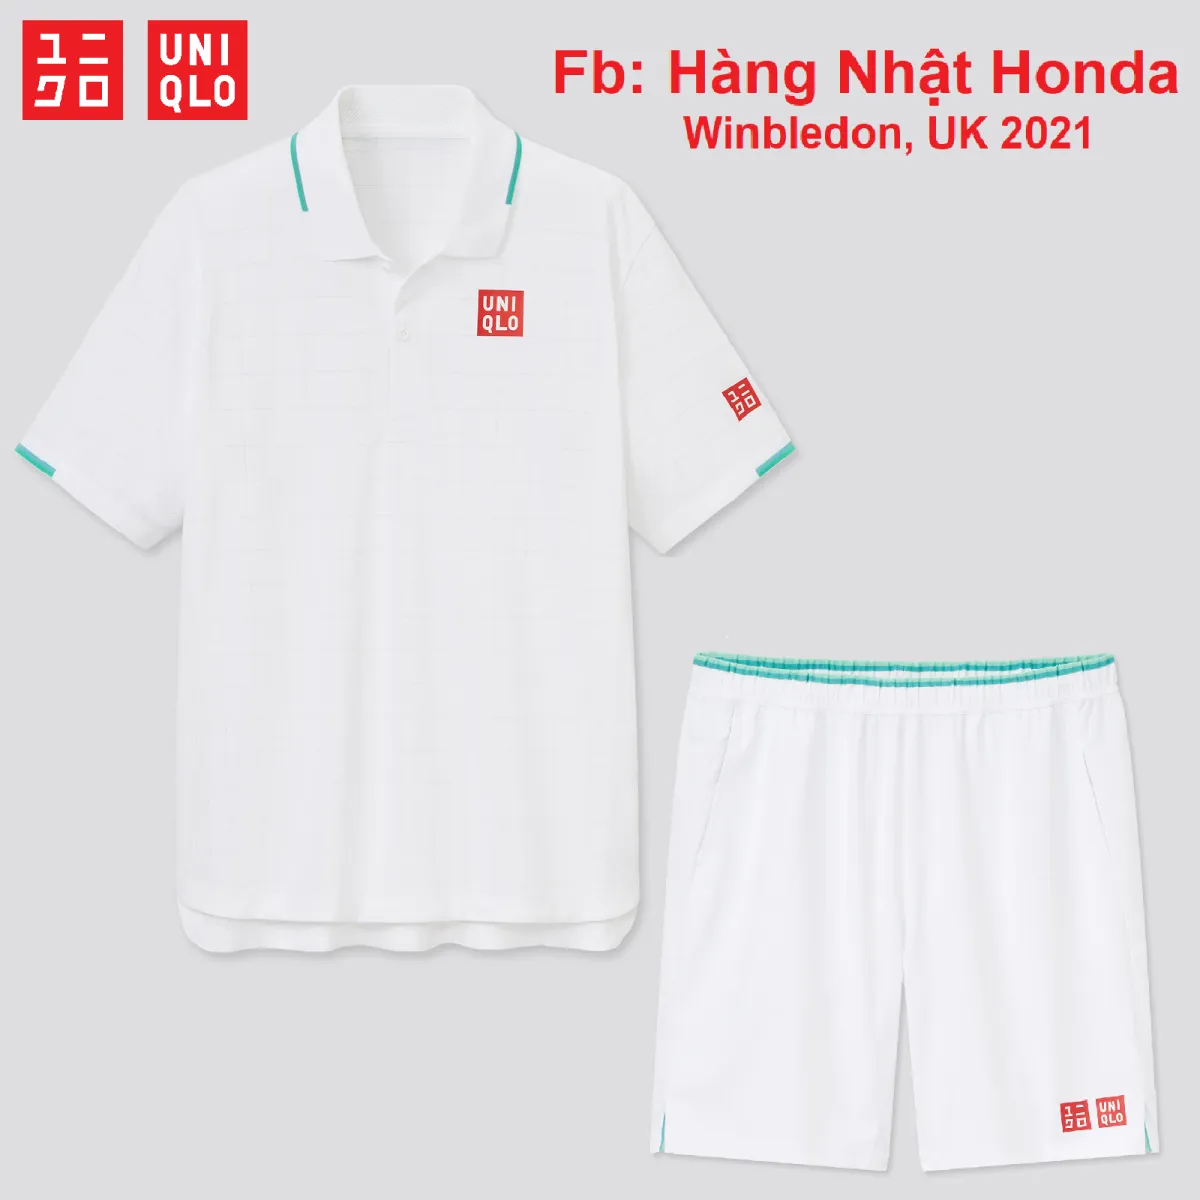 Bộ Thể Thao Uniqlo Nishikori Tennis Màu Nâu  Sumoauthentic  Thời trang  phụ kiện